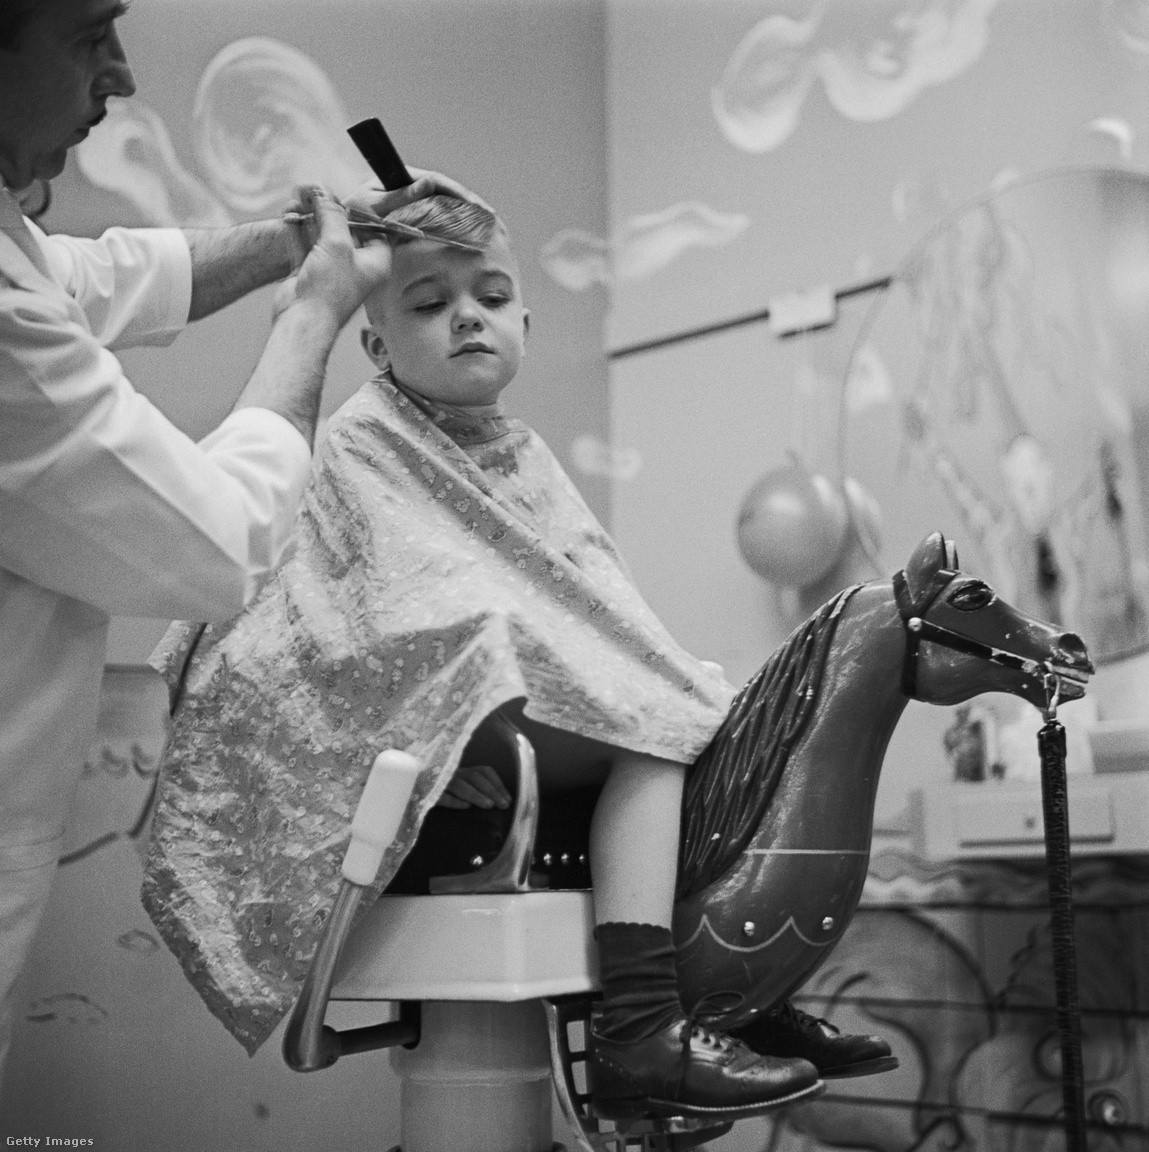 1955. Egy fodrász levágja a fiú haját